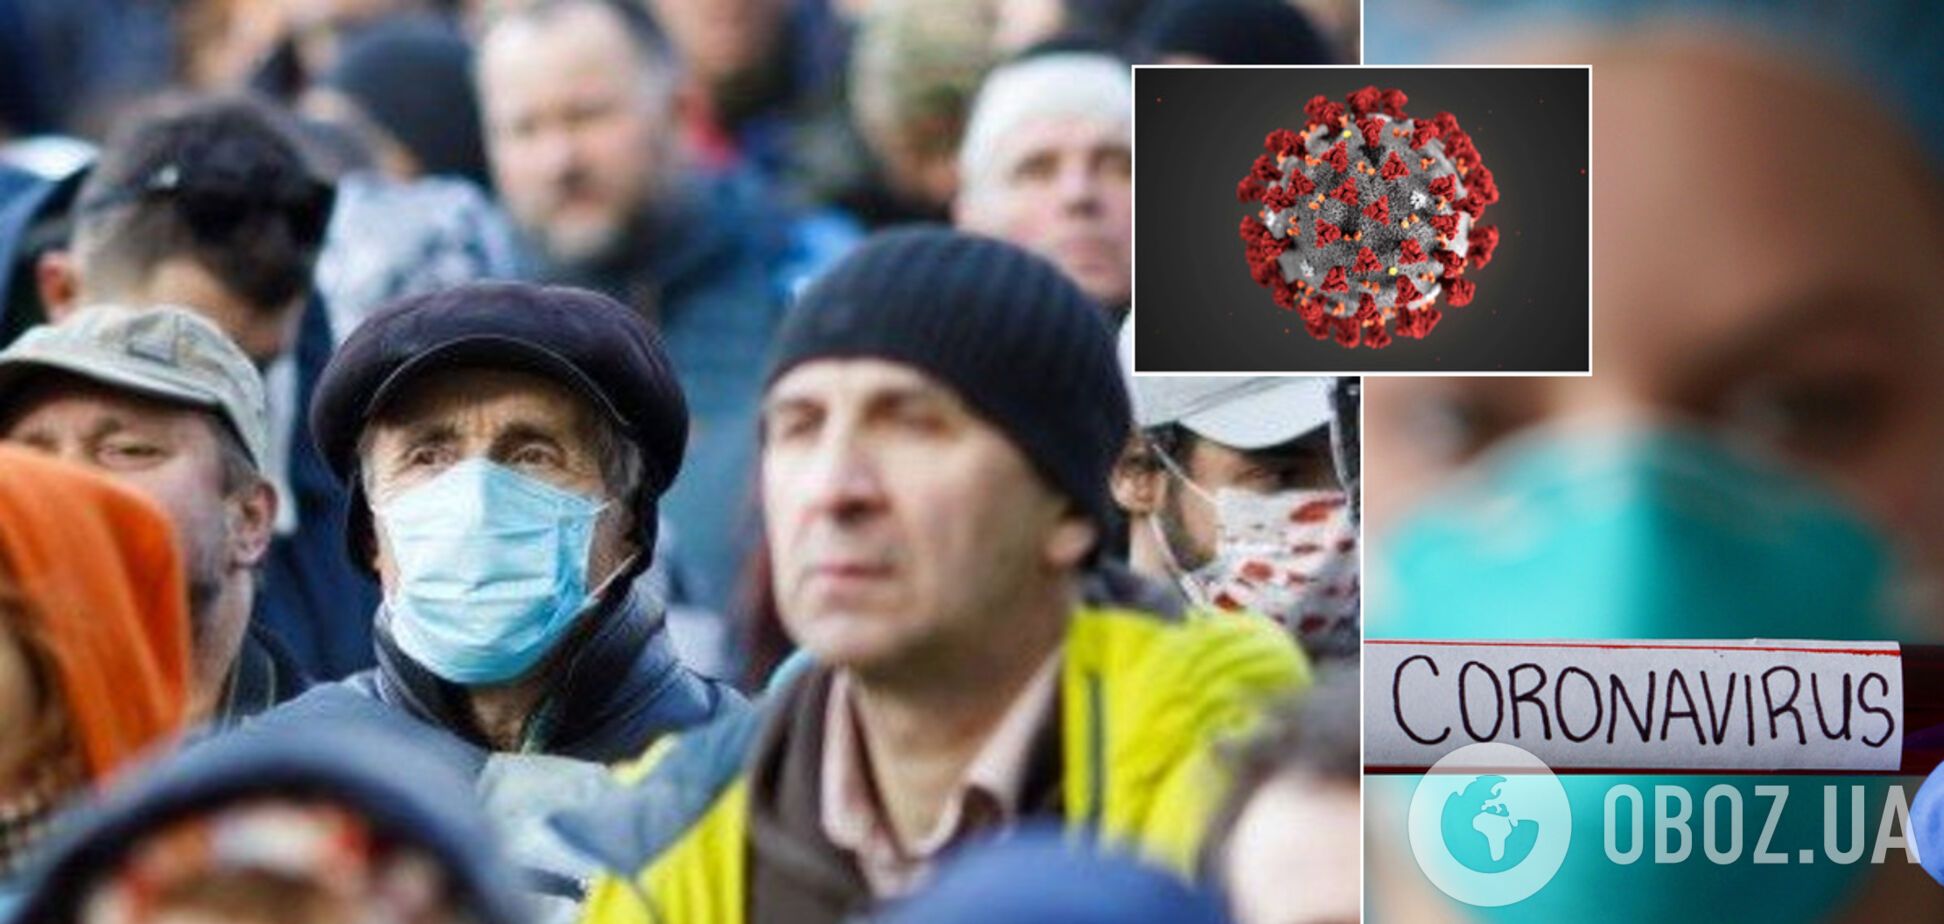 'COVID-19 останется навсегда, в Украине заболеет миллион': известный инфекционист предупредил о неизбежном